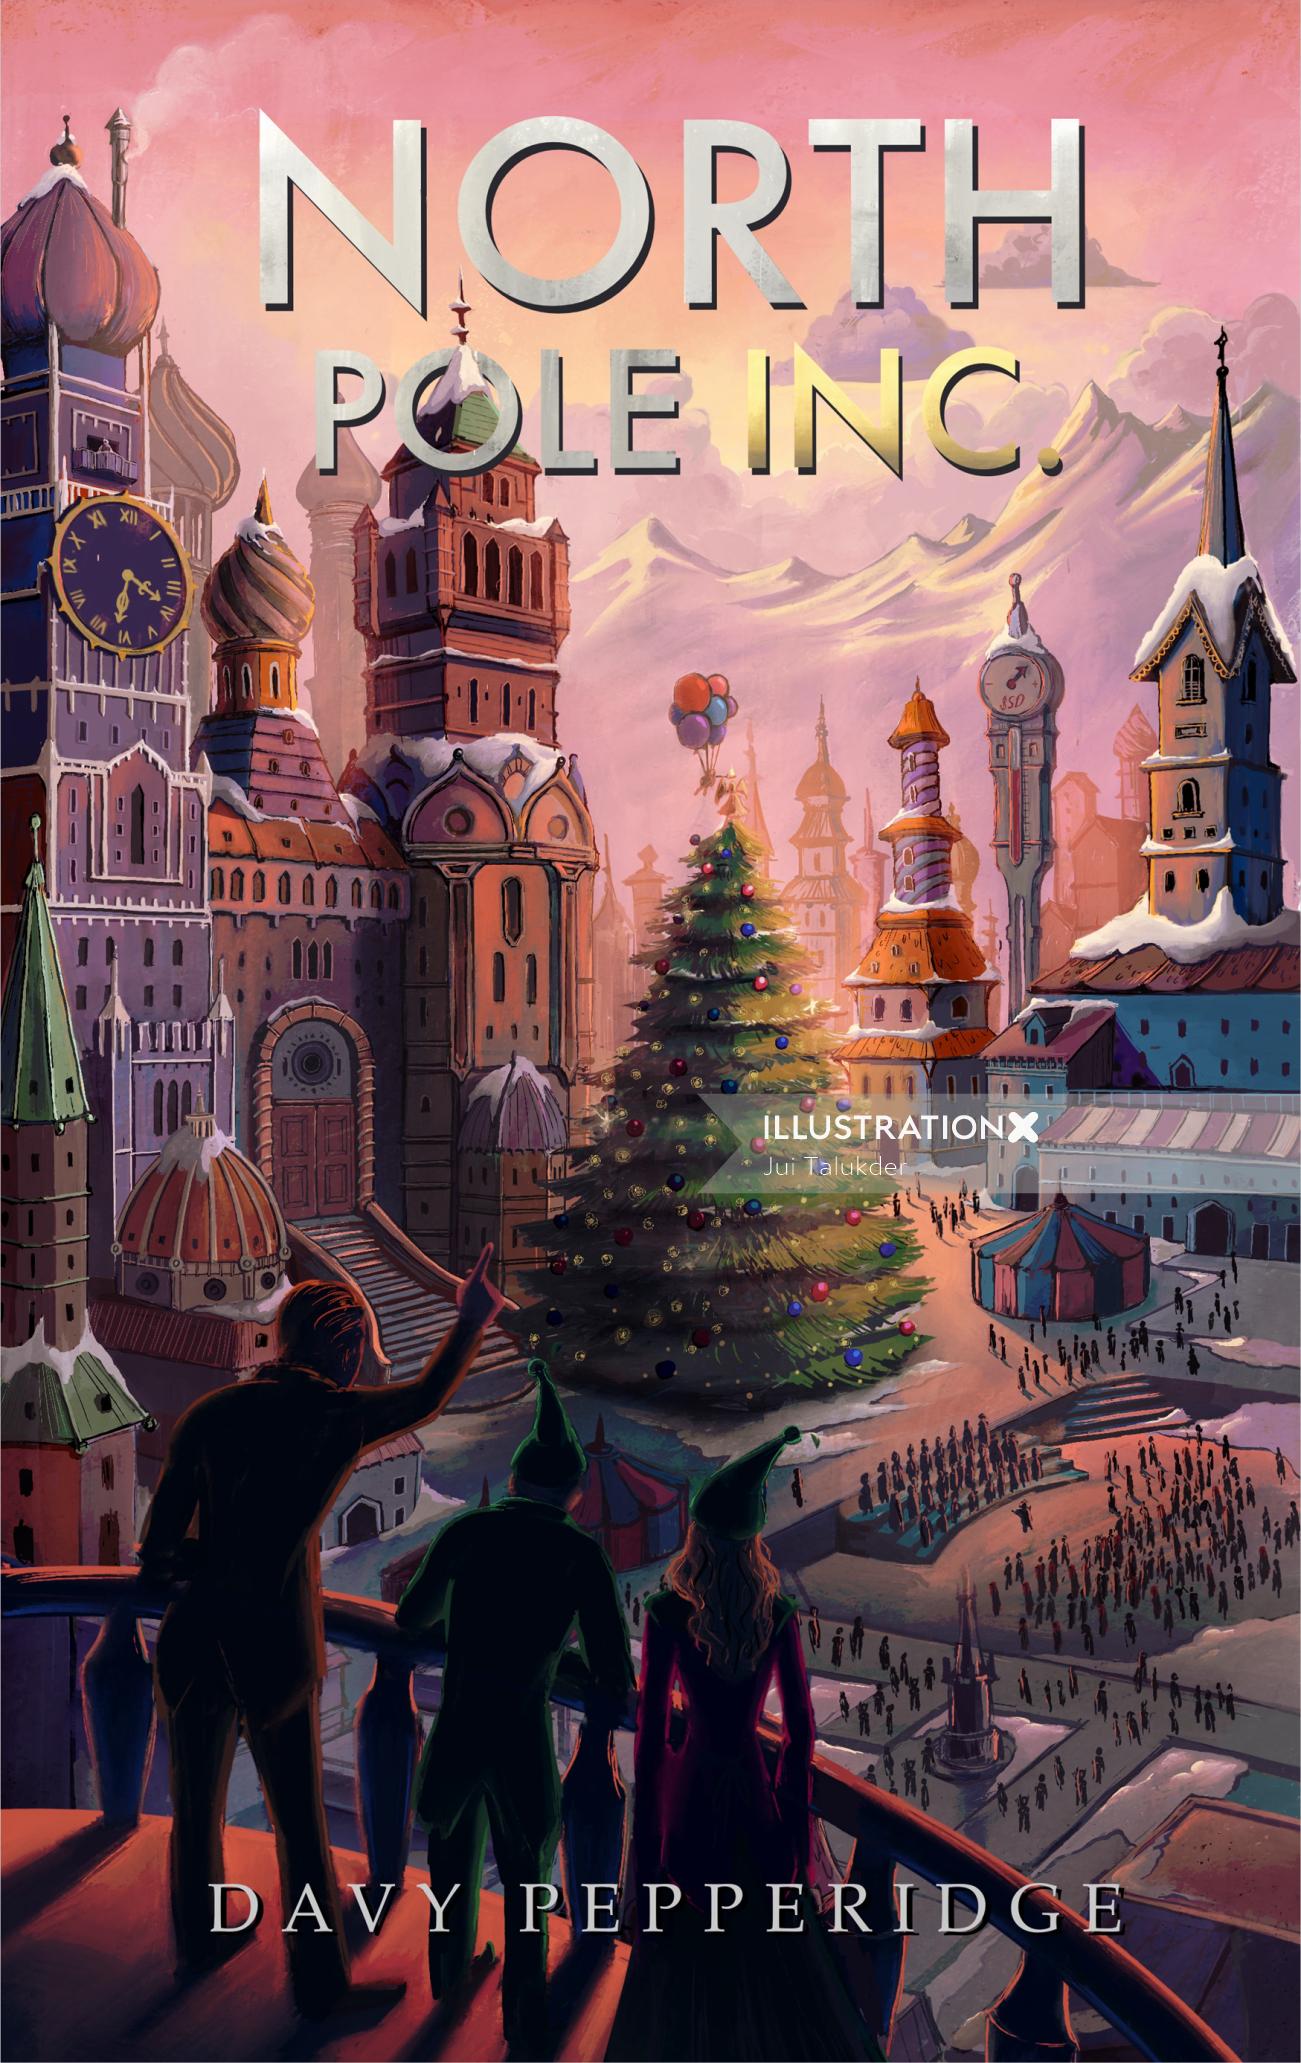 North Pole cartoon architecture book cover
